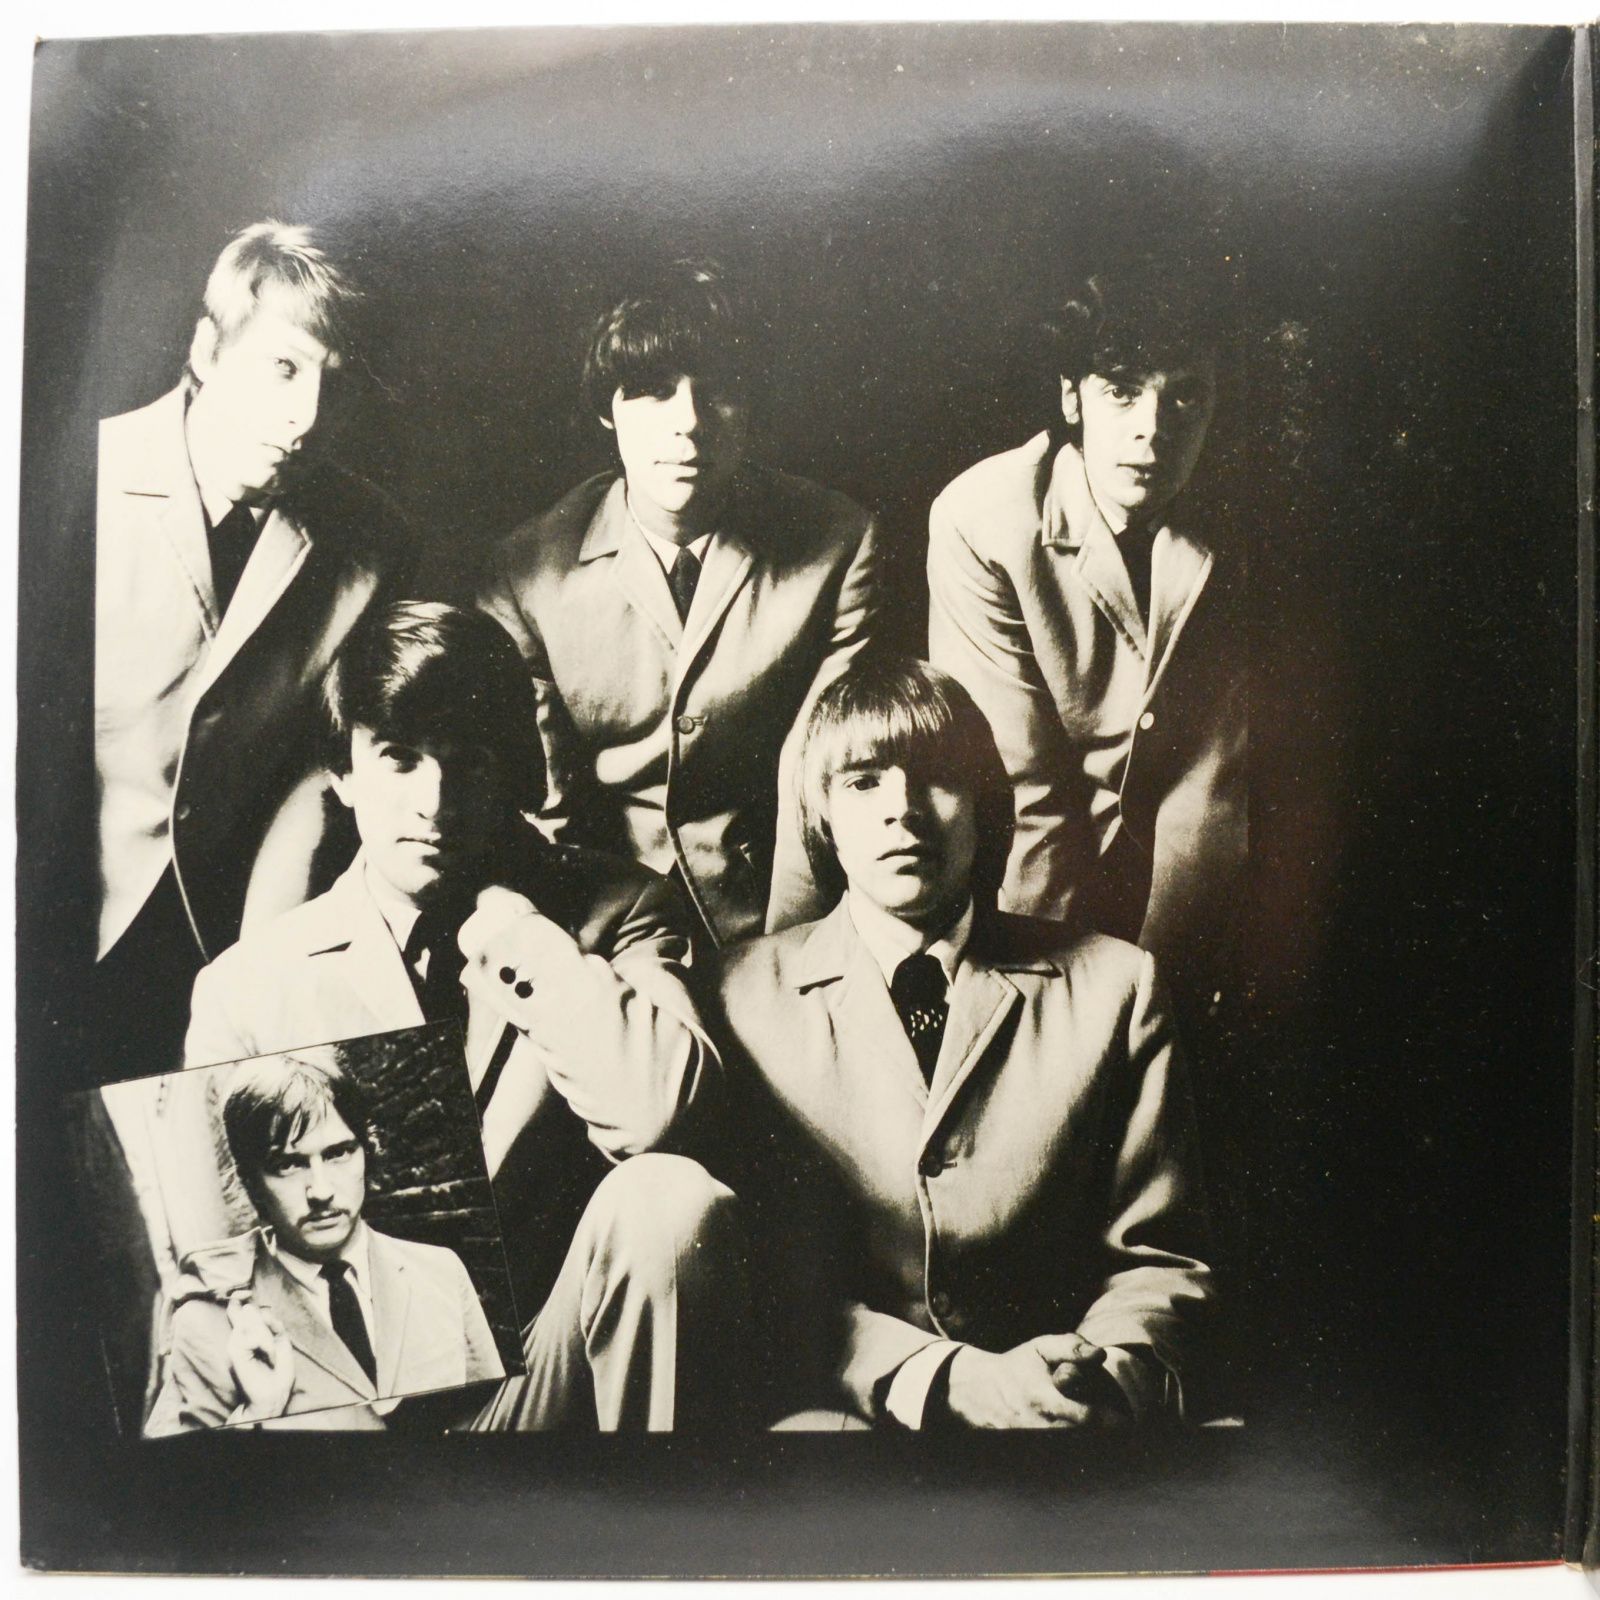 Yardbirds — Best Of (2LP), 1974